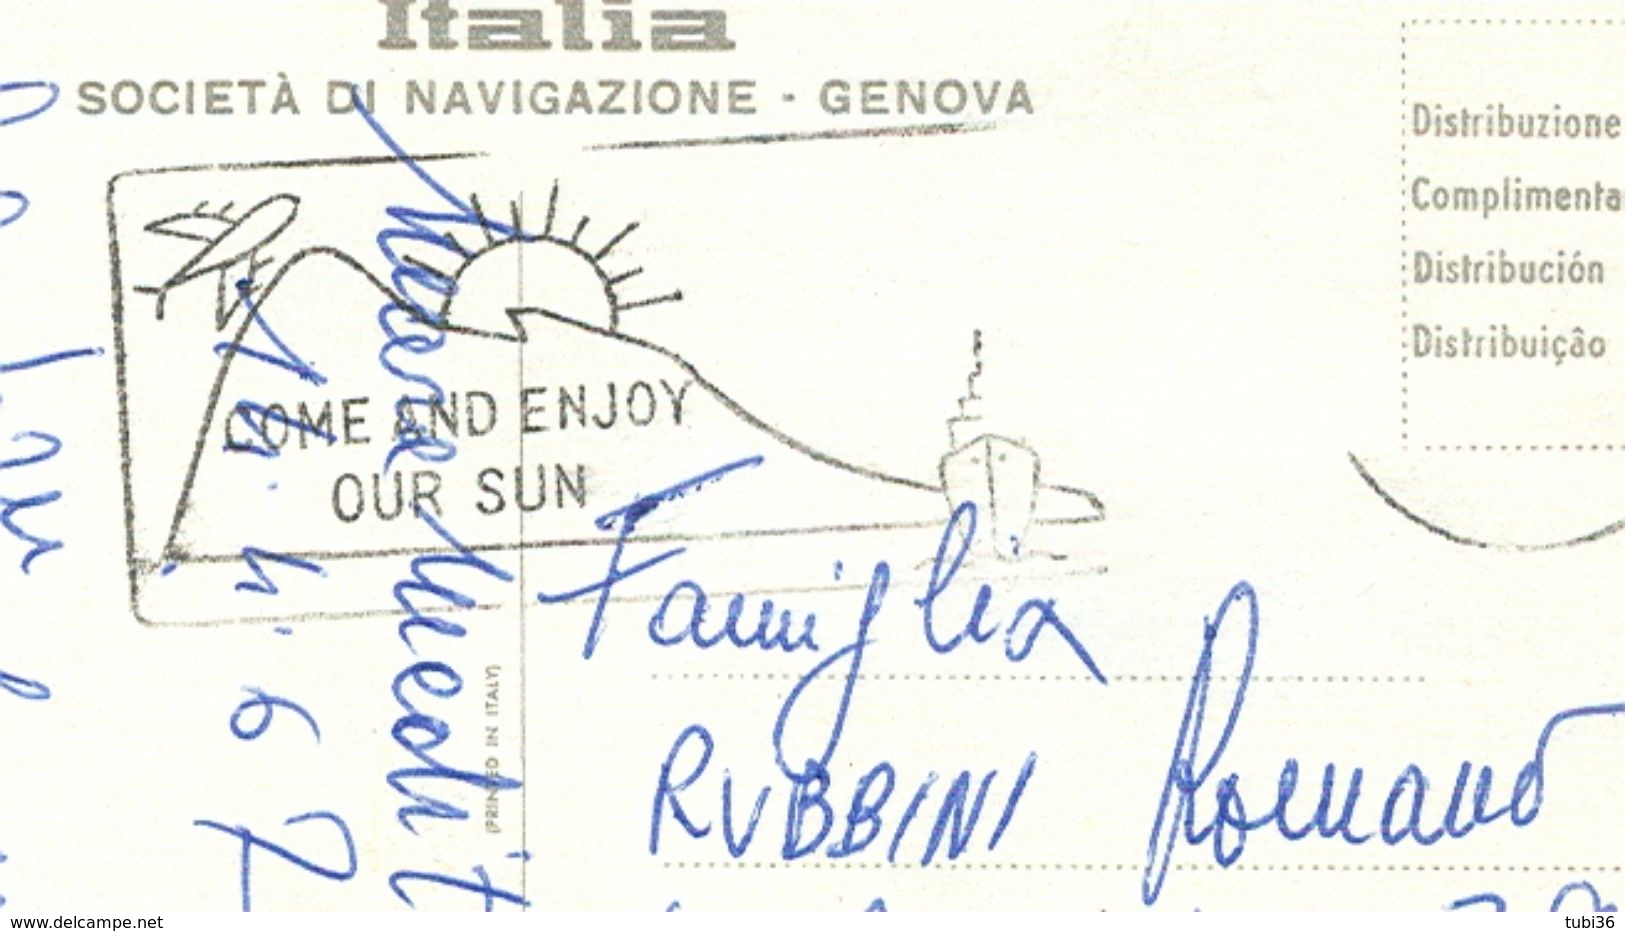 Italia Societa Di Navigazione - Genova - Nave T/n Michelangelo E Raffaello,  COLORI, VIAGGIATA  1967, - Altri & Non Classificati